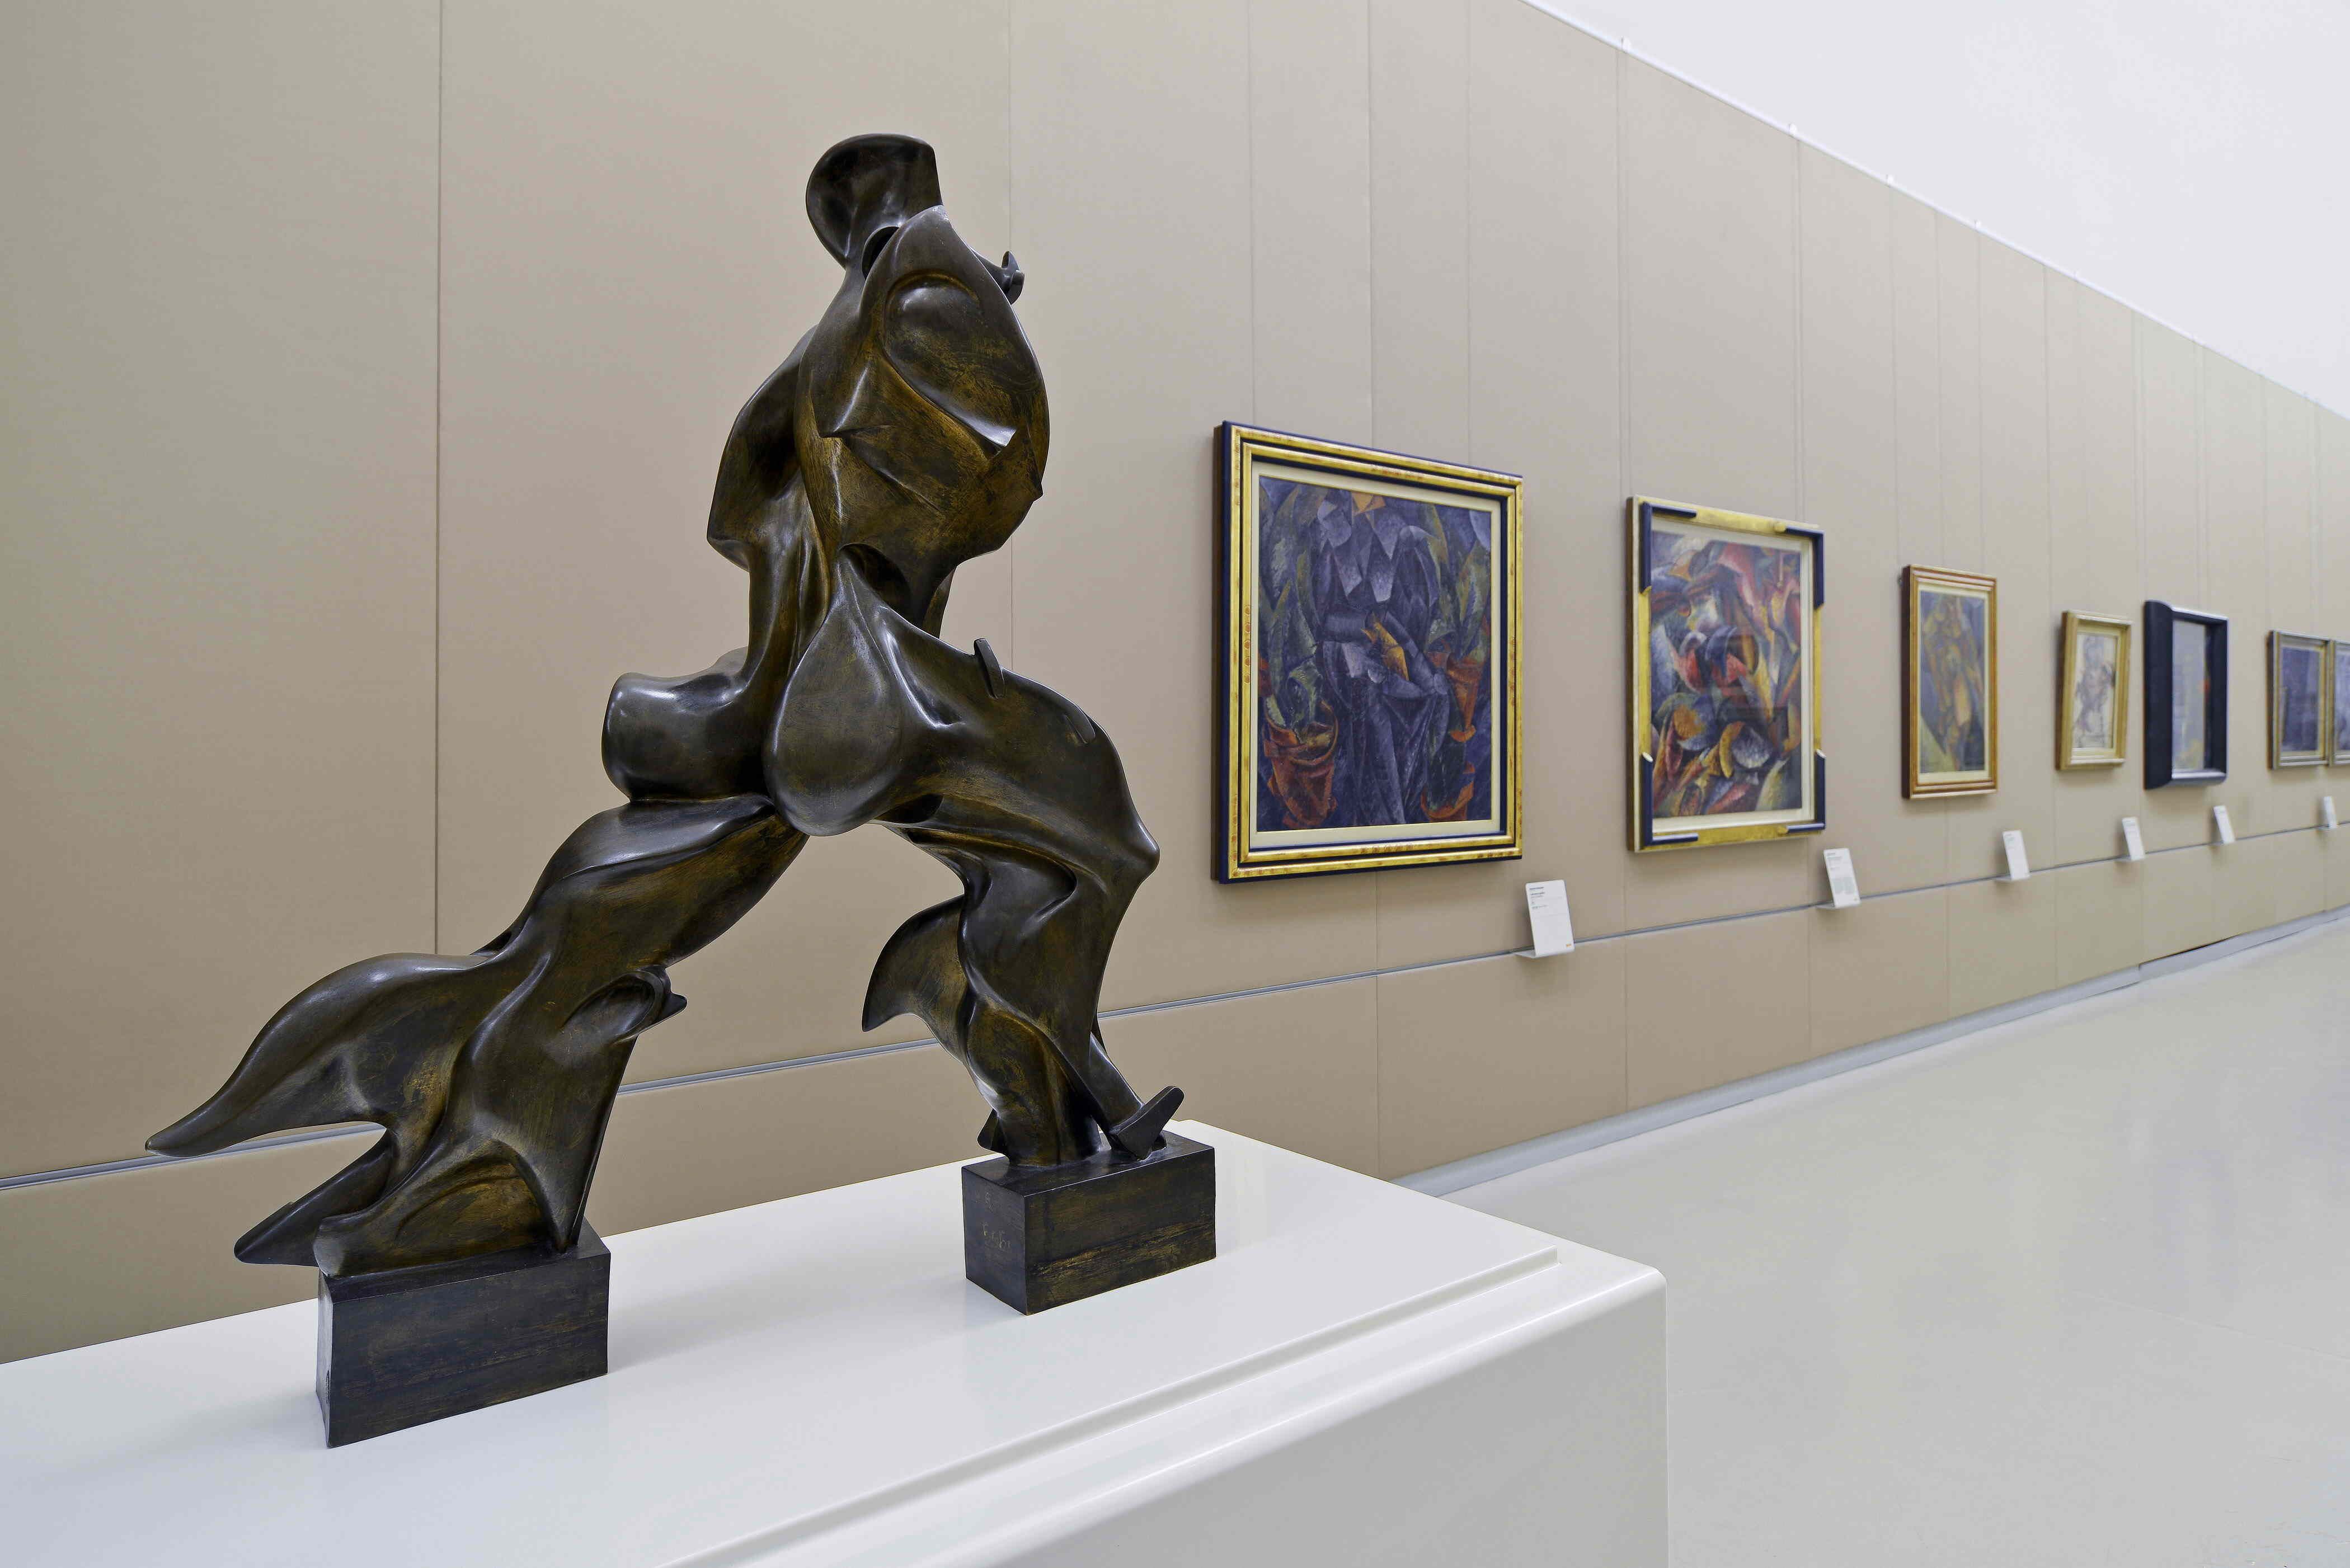 Forme uniche della continuità nello spazio, Umberto Boccioni, expuesta en Milán.